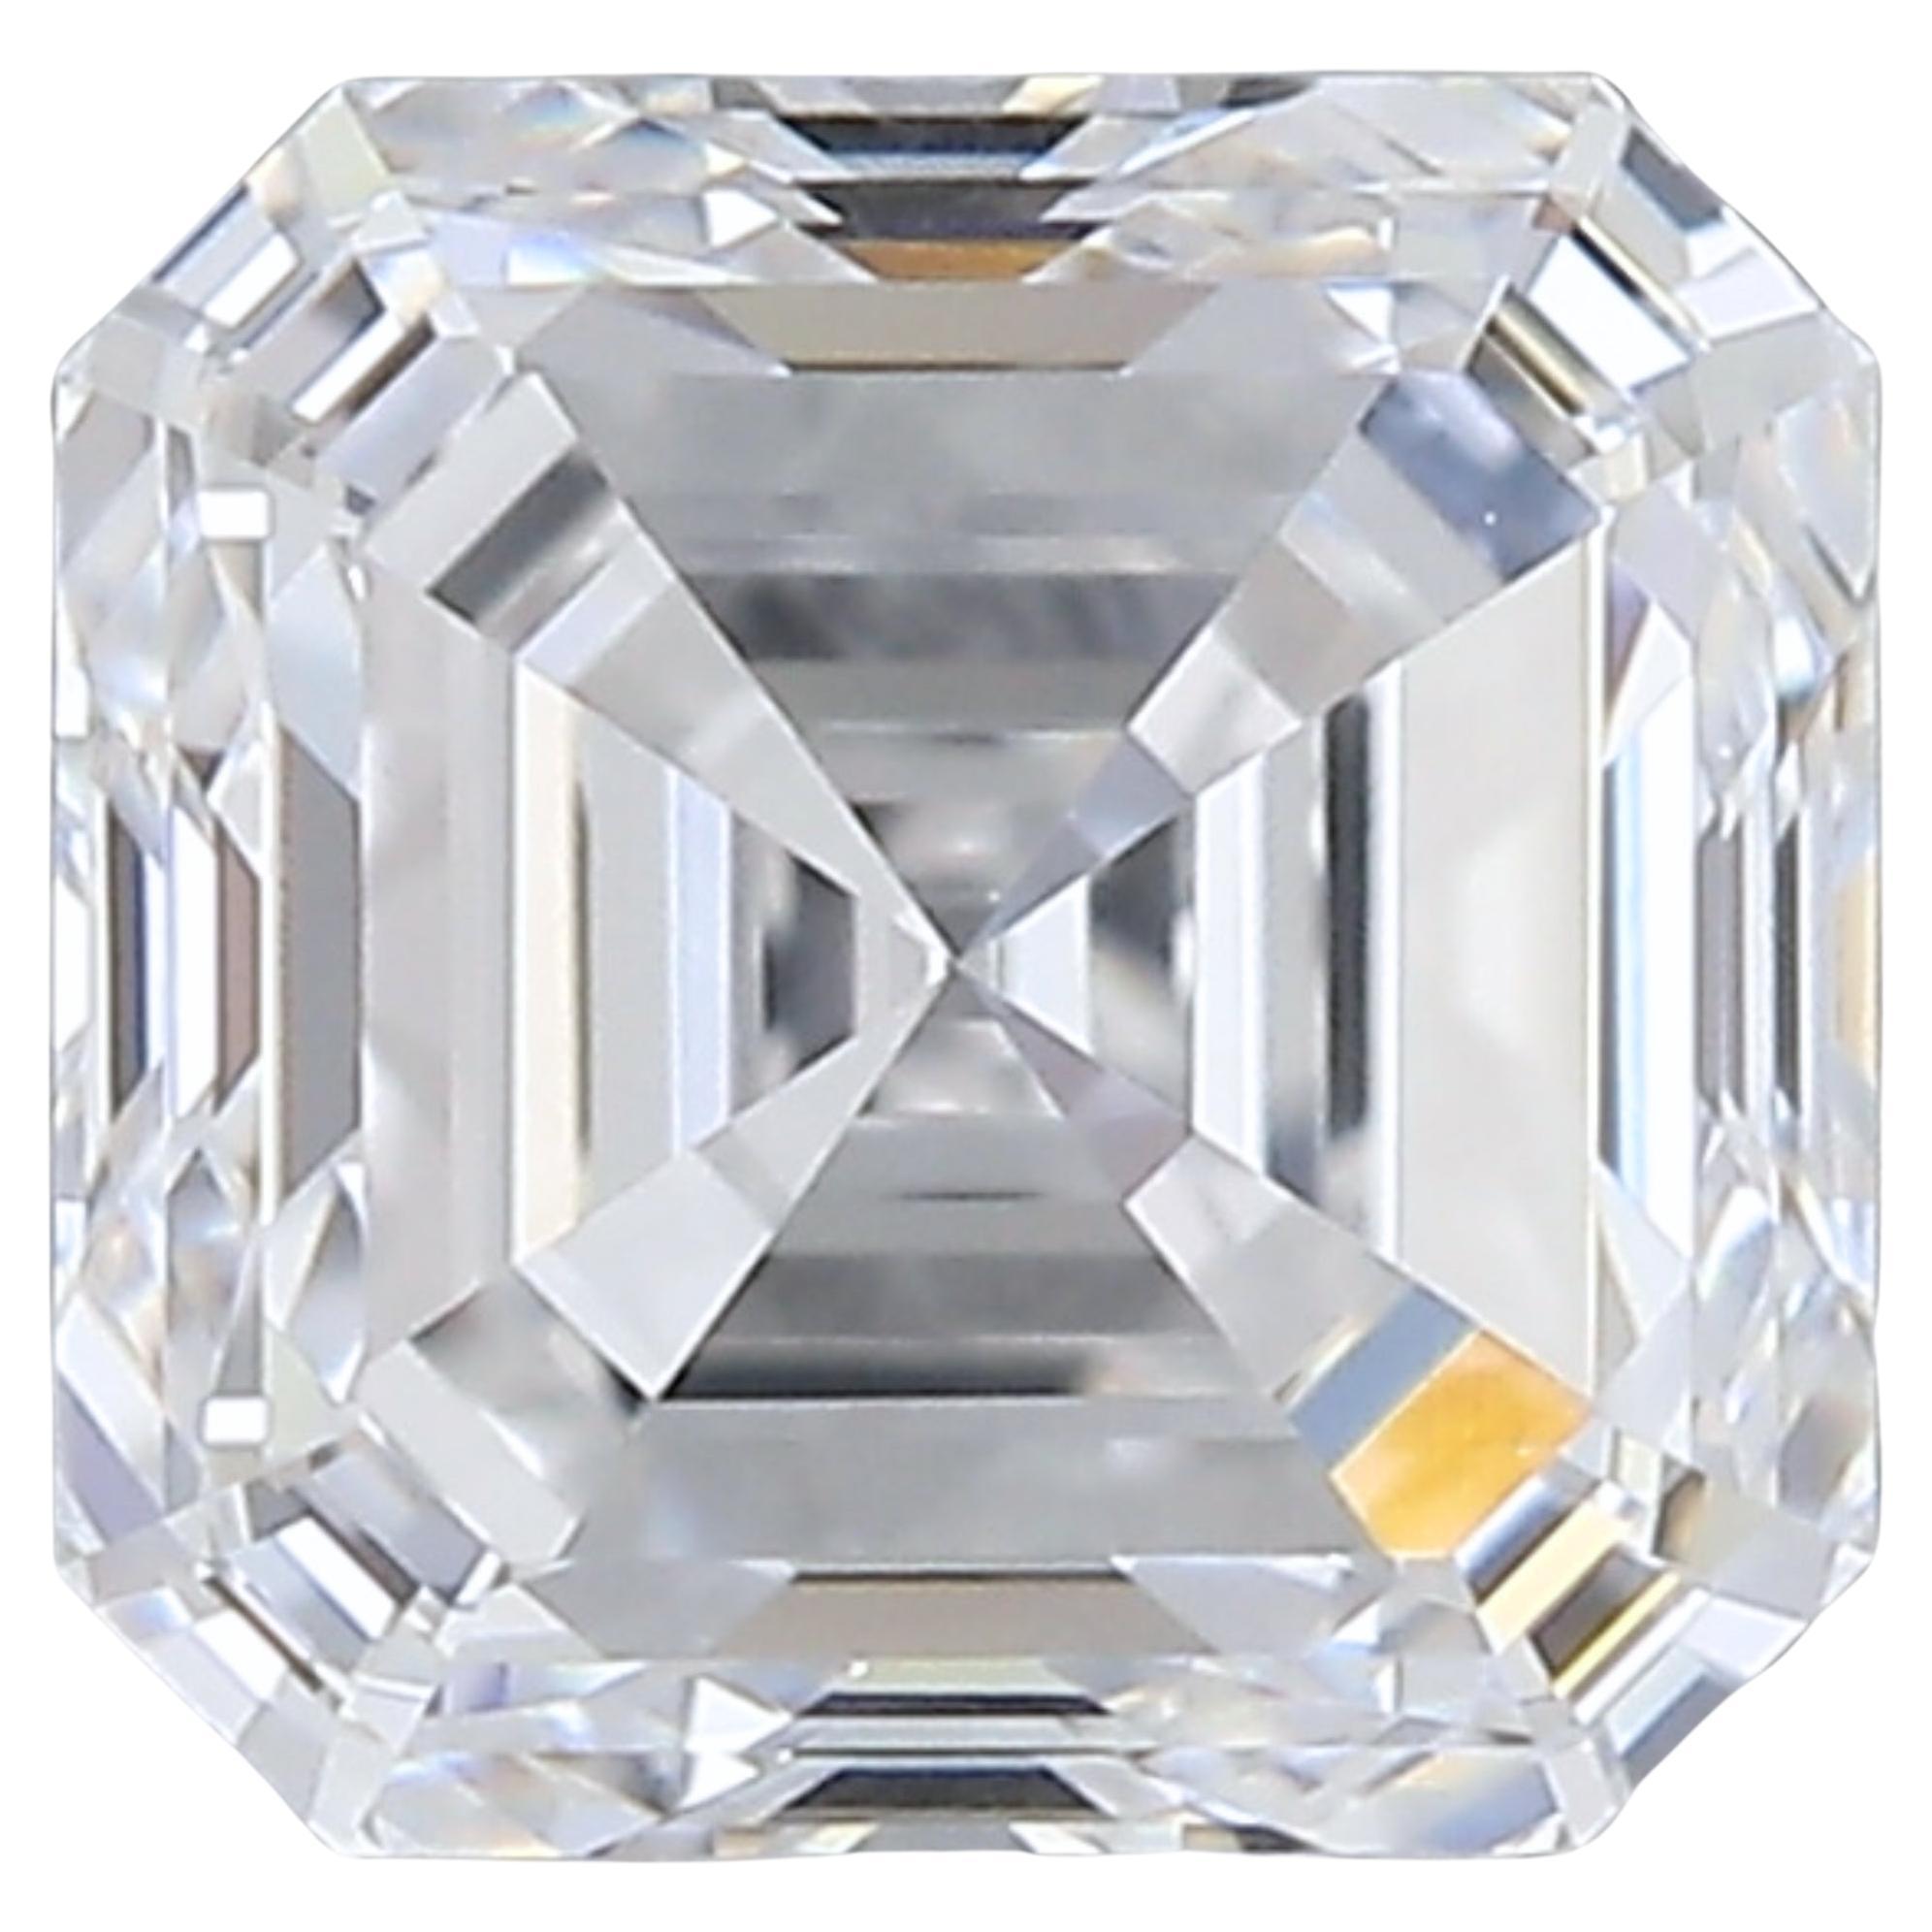 1pc Dazzling Natural cut Emerald diamond in a 1 carat